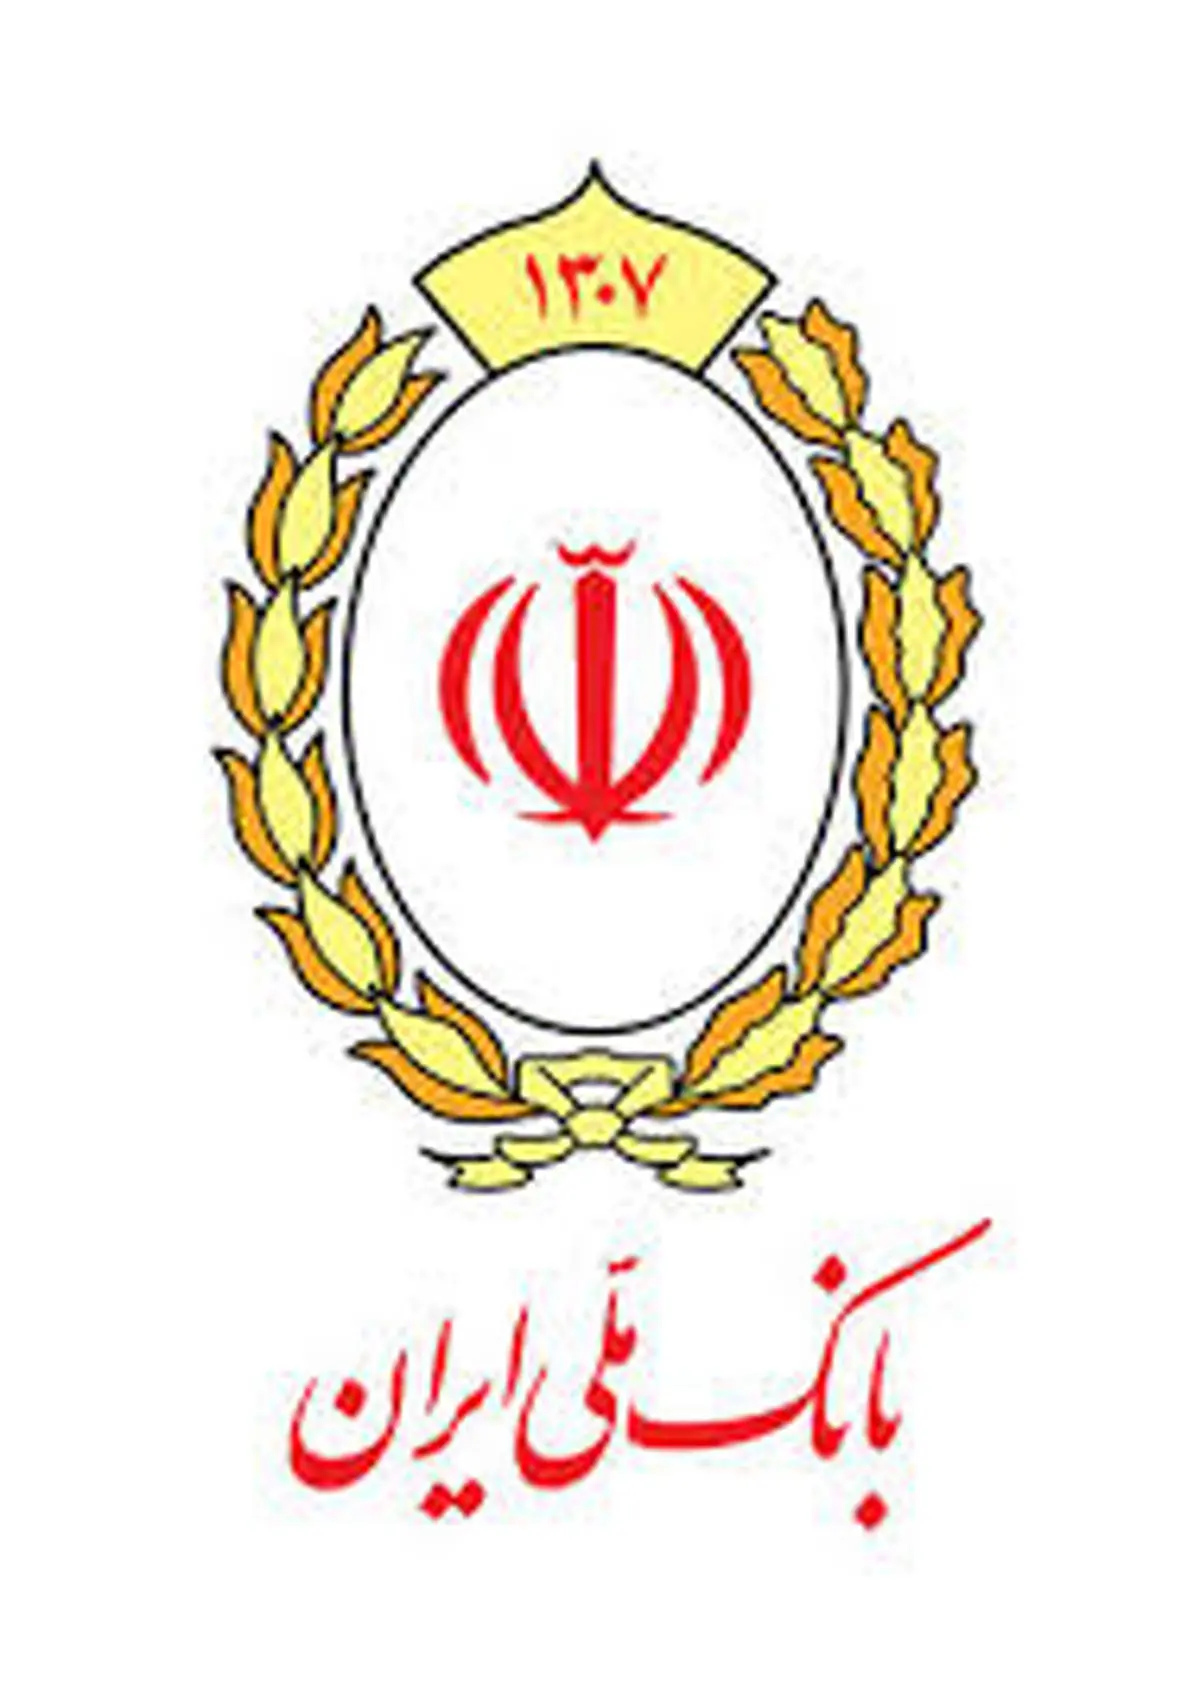 با خرید دین بانک ملی ایران در بازار کسب و کار ماندگار شوید

